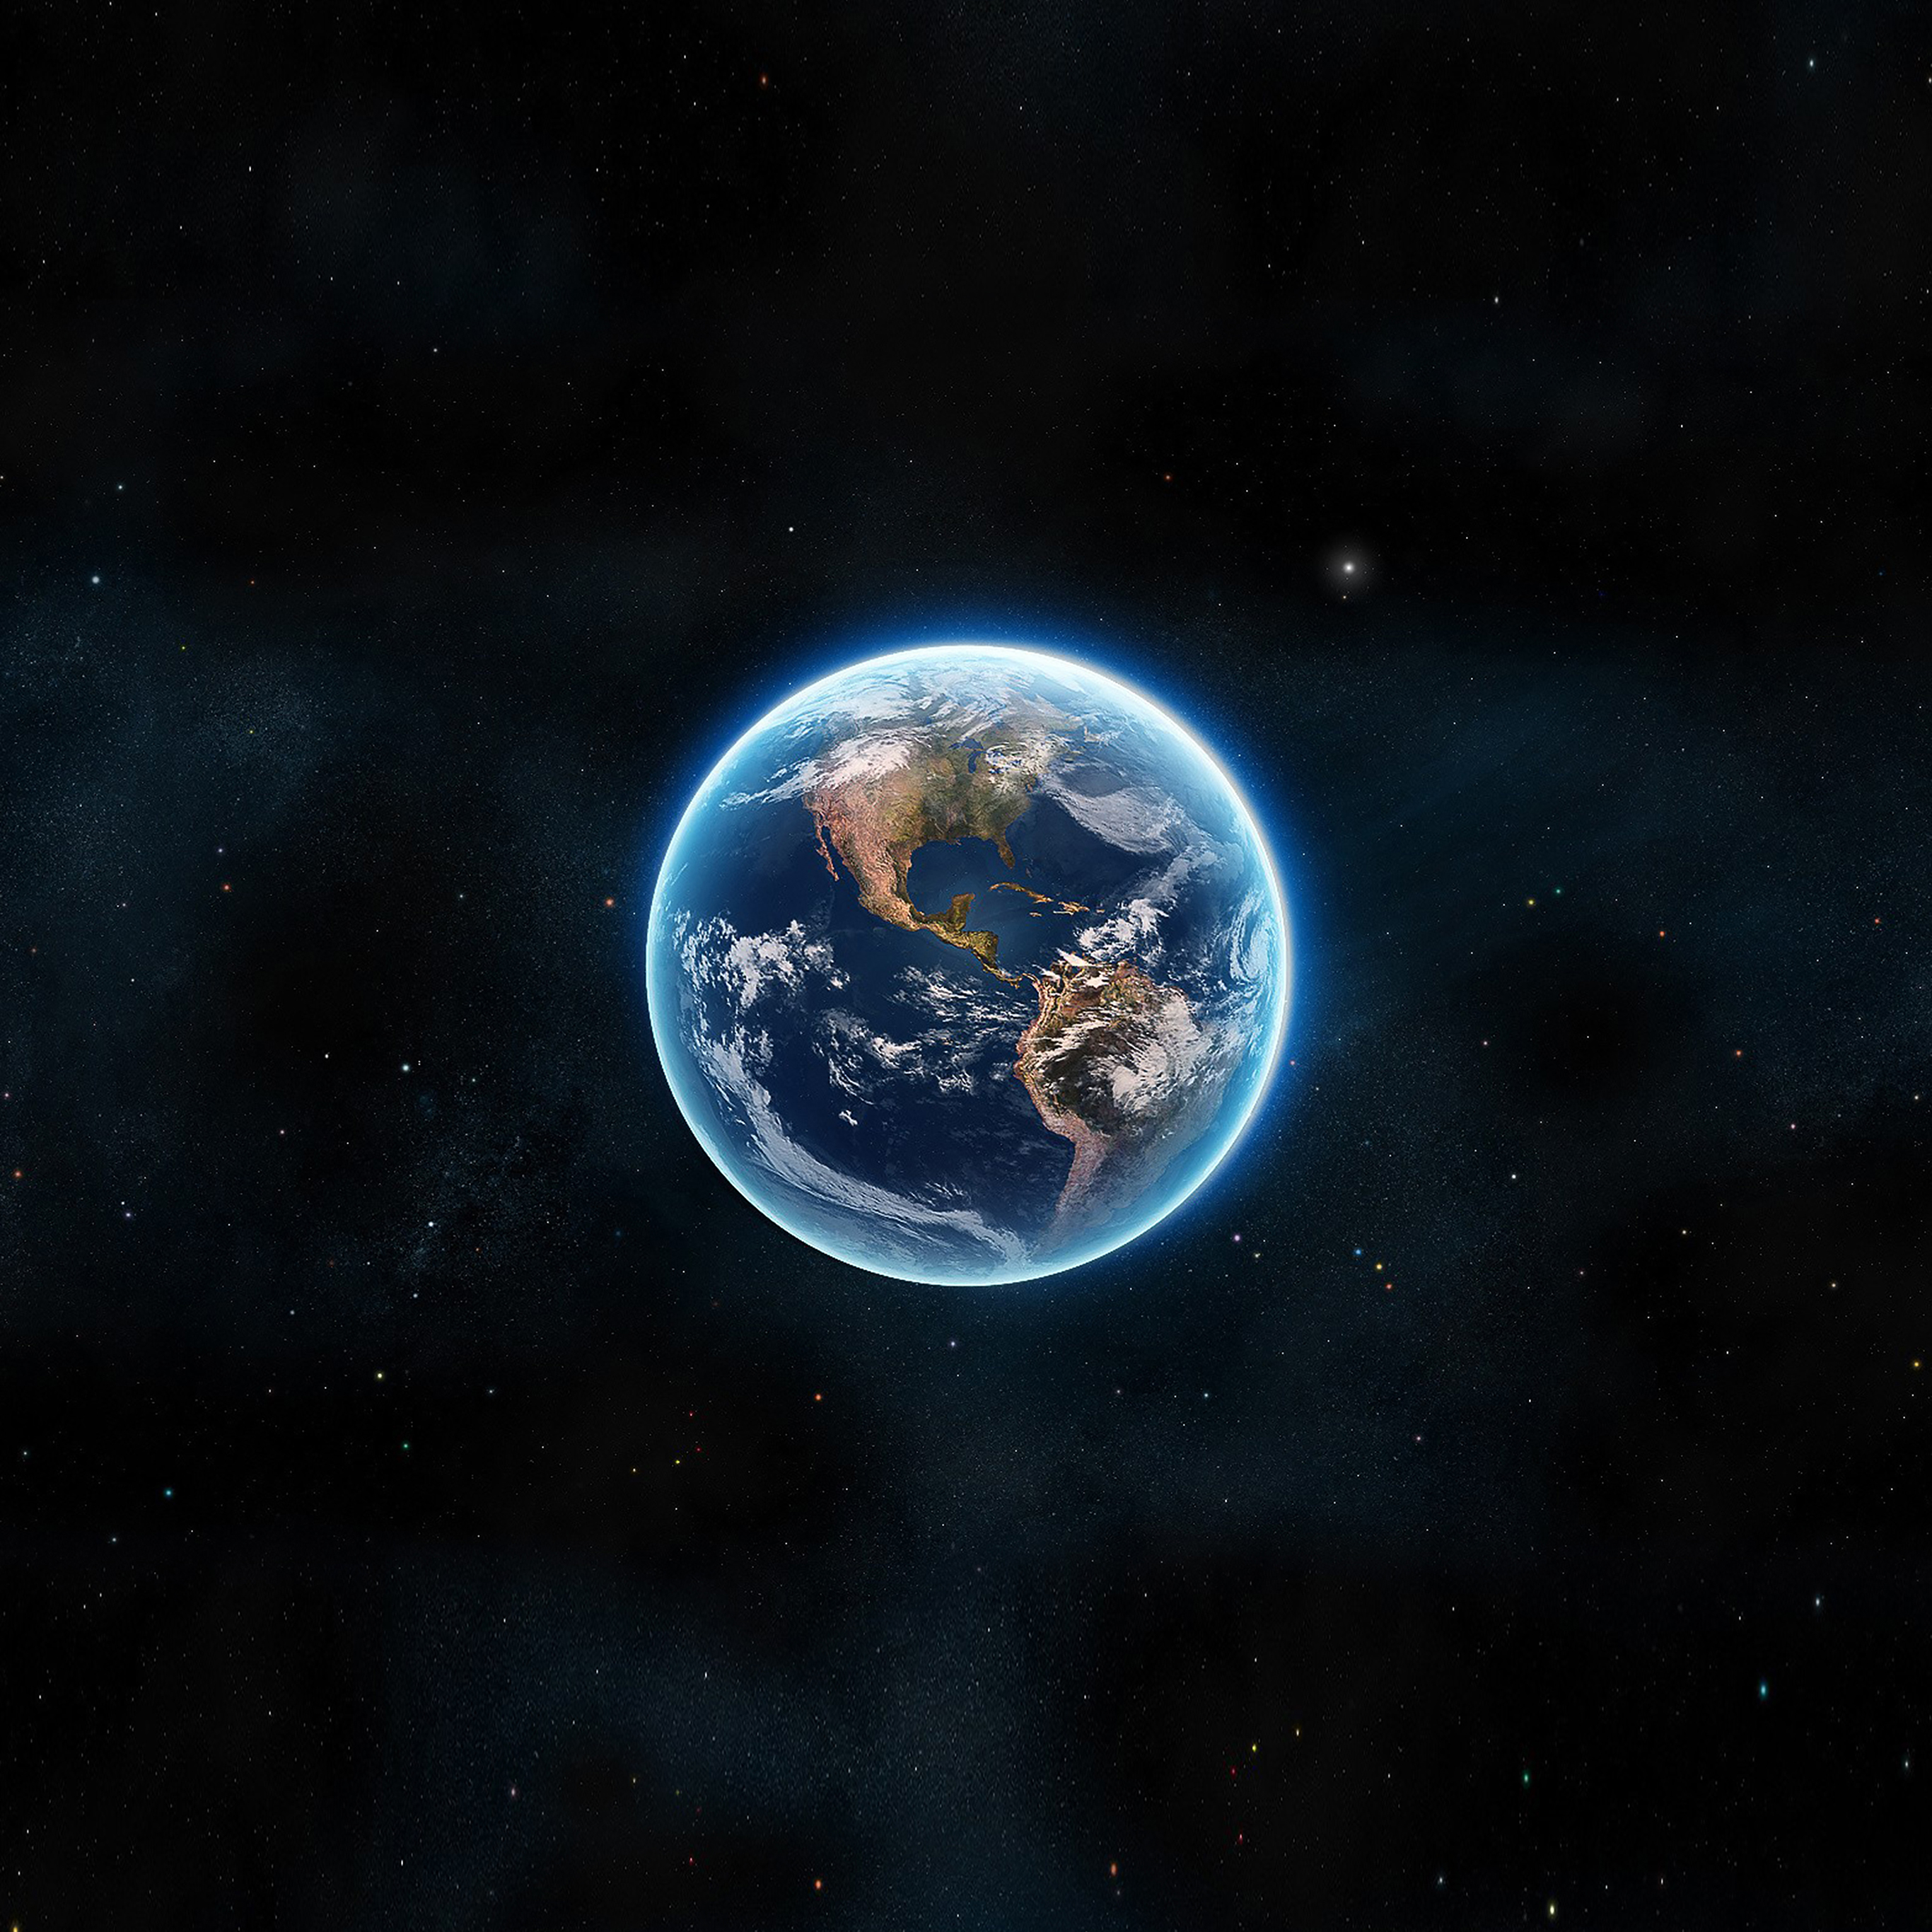 Ảnh nền đẹp chất lượng 4K cho iPhone và iPad Pro: Trái Đất nhìn từ trên cao